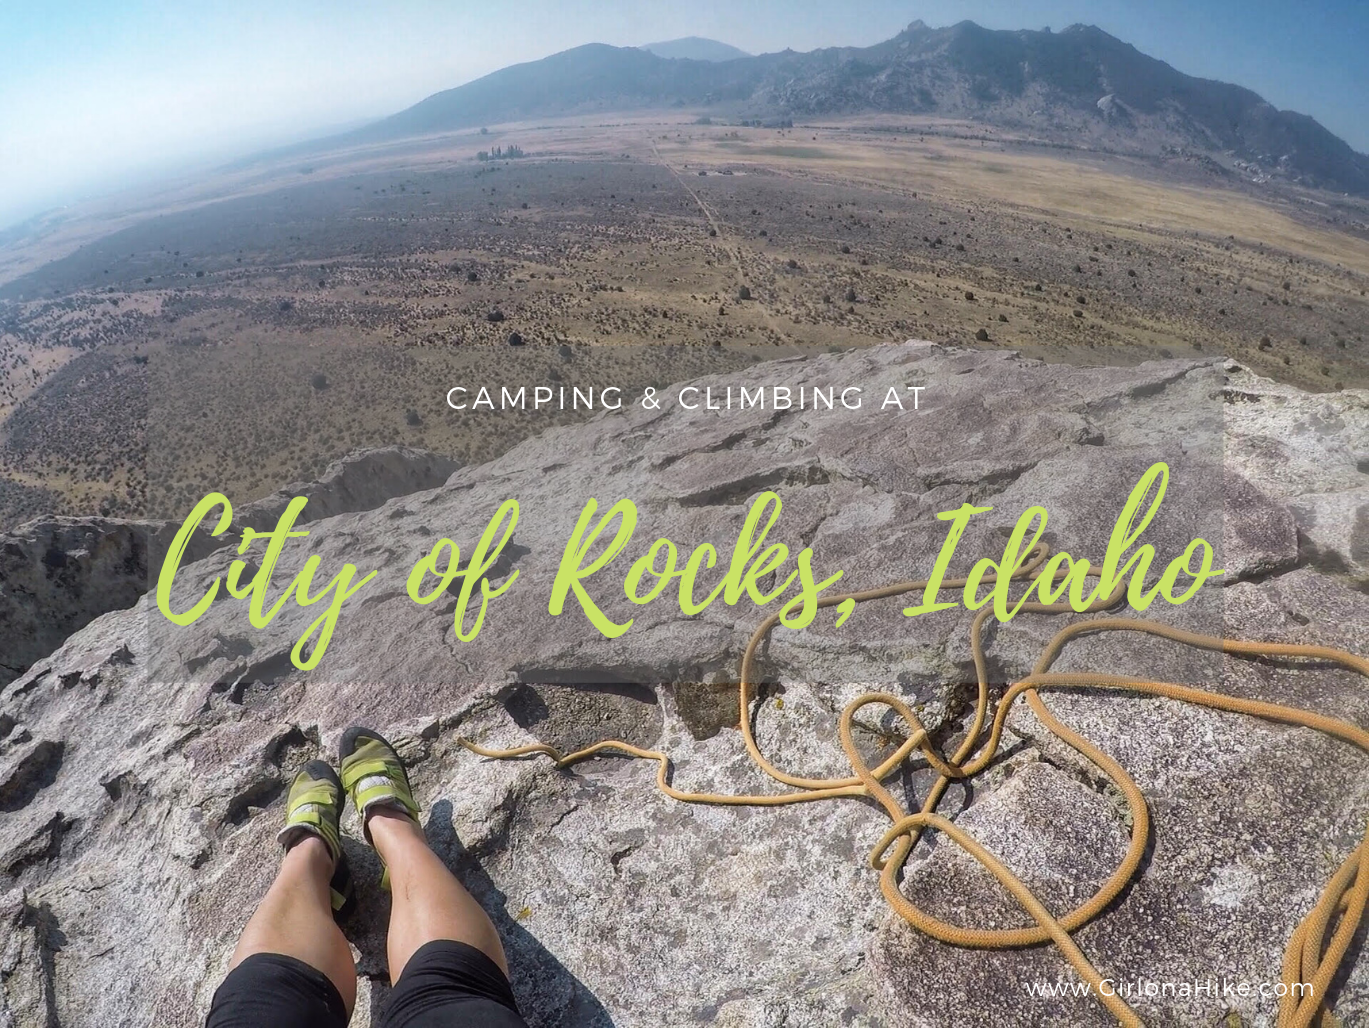 Camping & Climbing at City of Rocks, Idaho